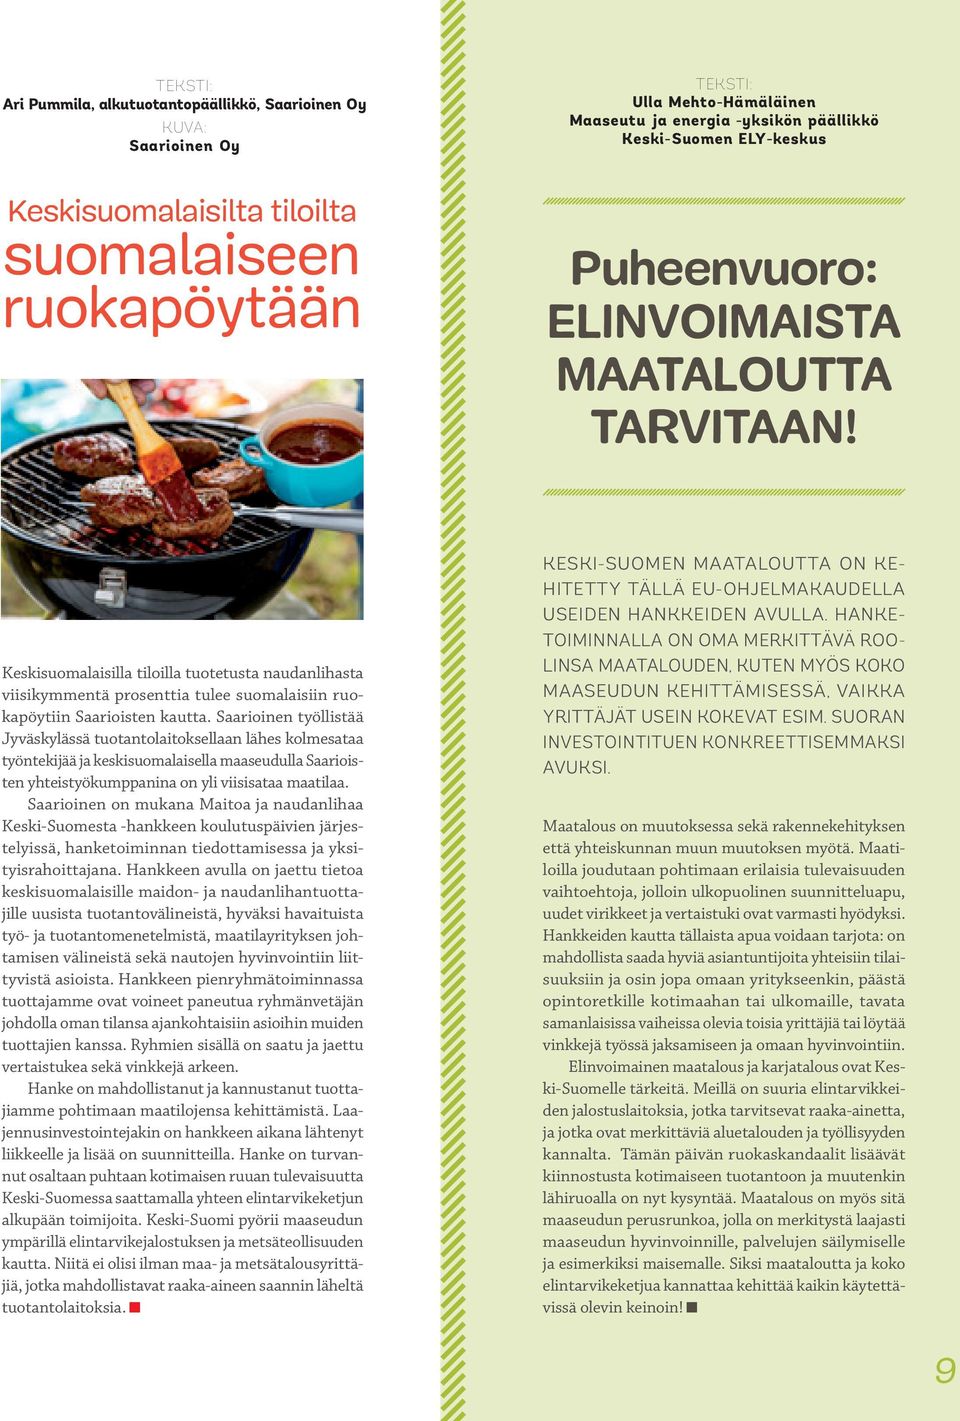 Keskisuomalaisilla tiloilla tuotetusta naudanlihasta viisikymmentä prosenttia tulee suomalaisiin ruokapöytiin Saarioisten kautta.